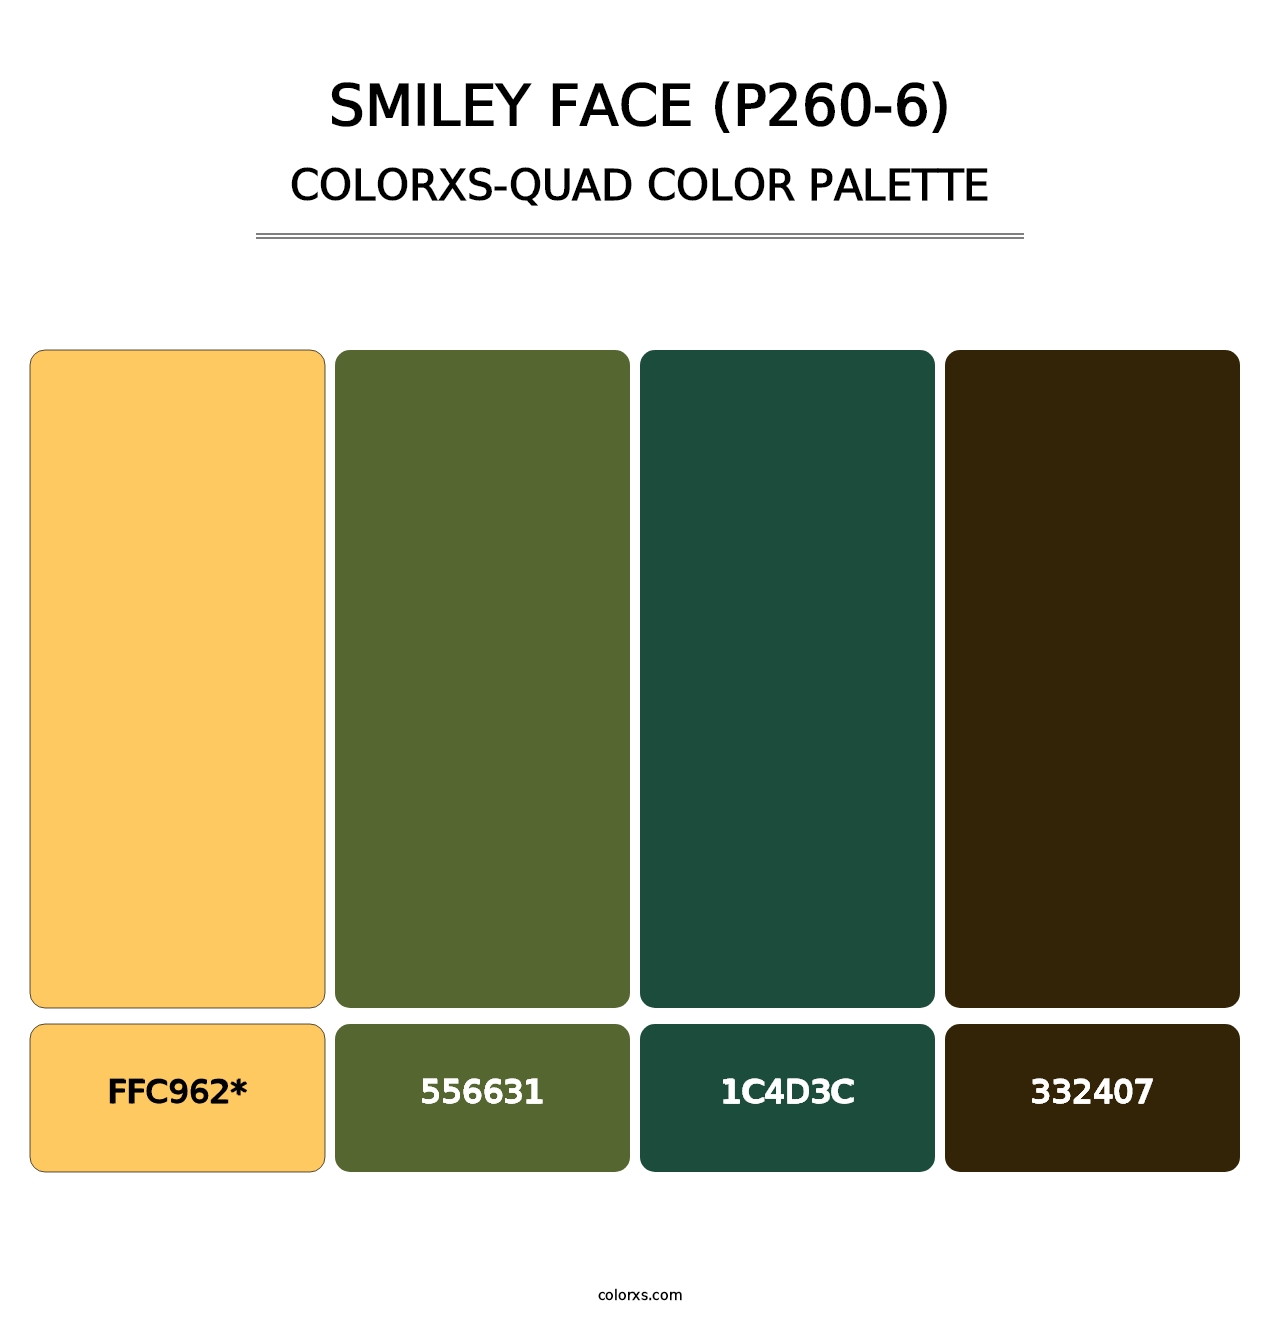 Smiley Face (P260-6) - Colorxs Quad Palette